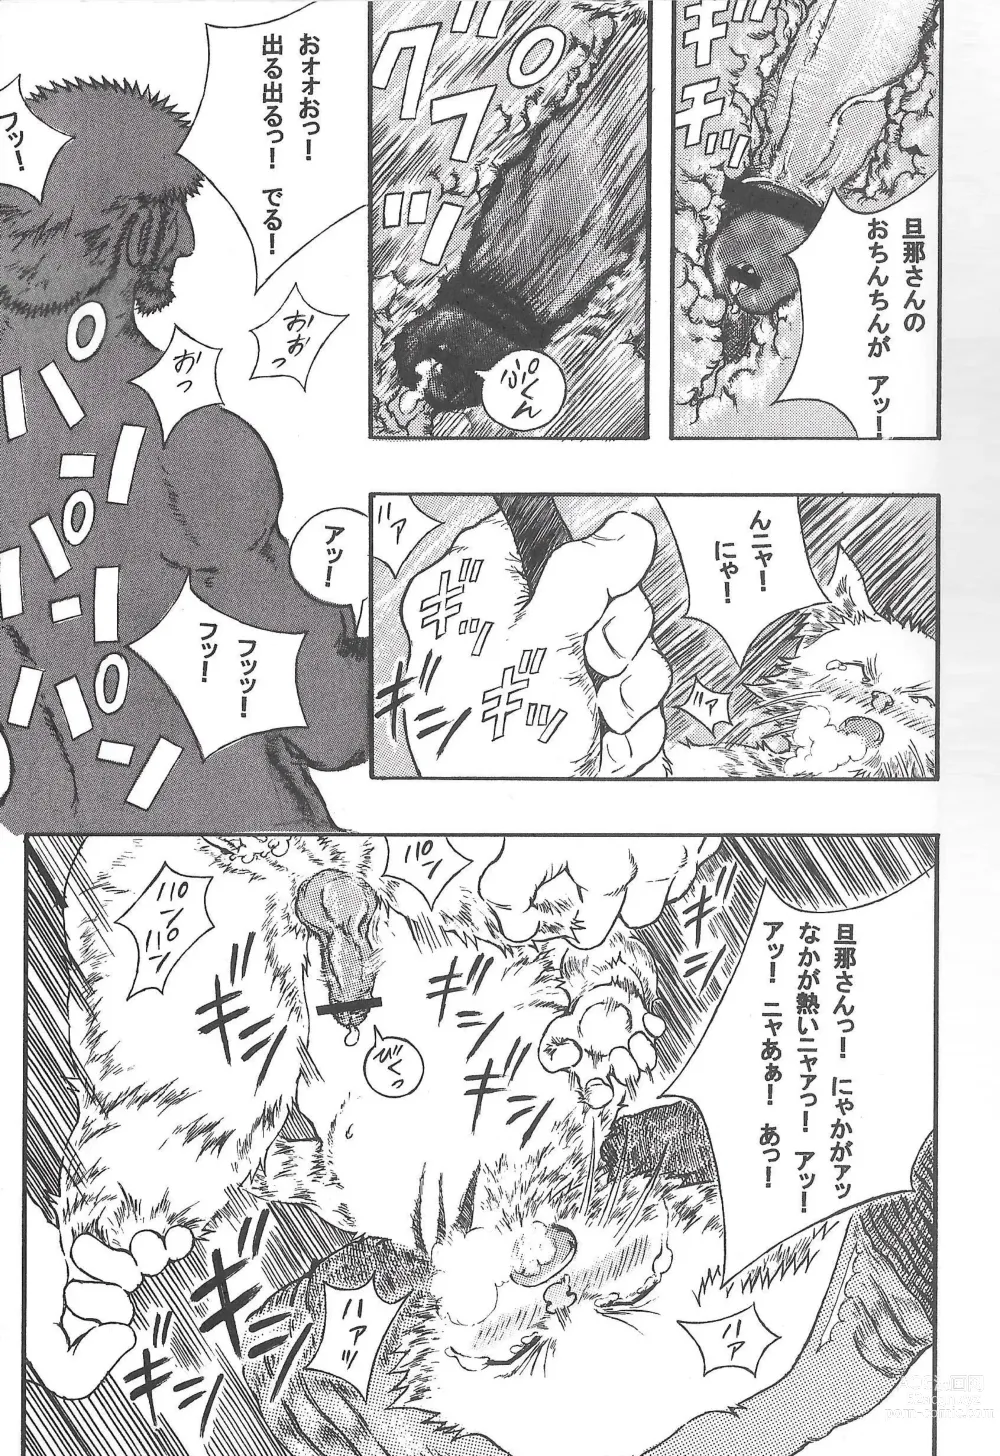 Page 28 of doujinshi Airu Monhun Dream